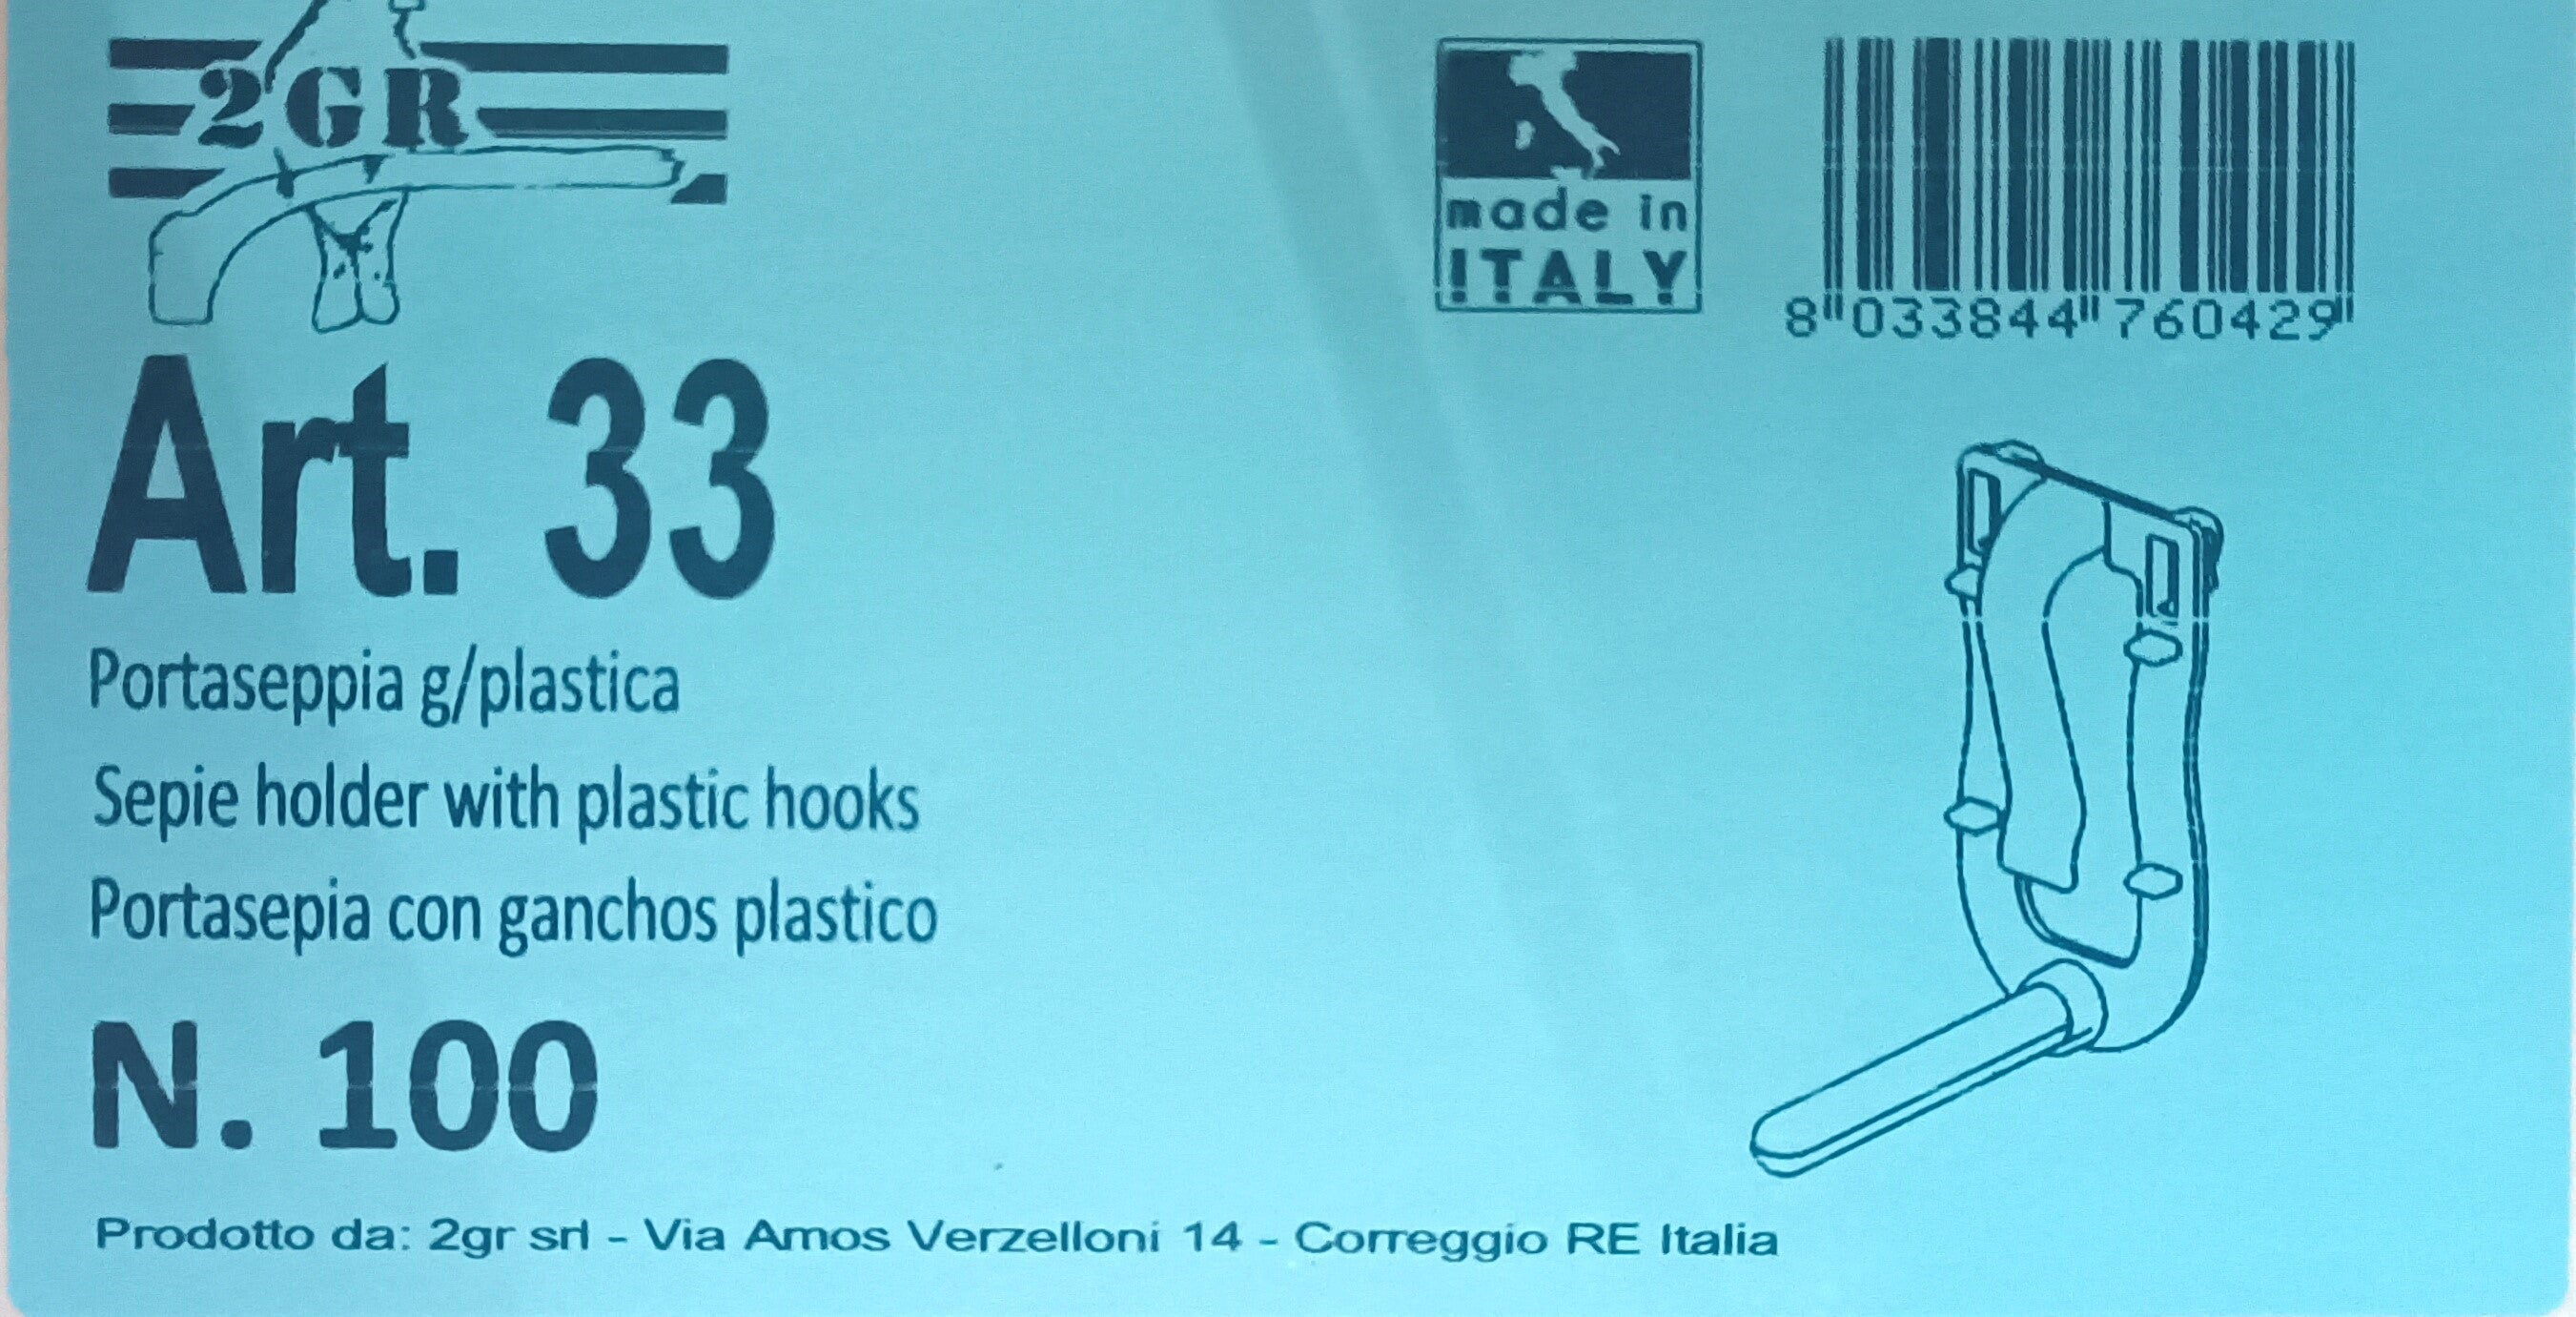 2GR Sepie Holder With Plastic Hooks Art. 33